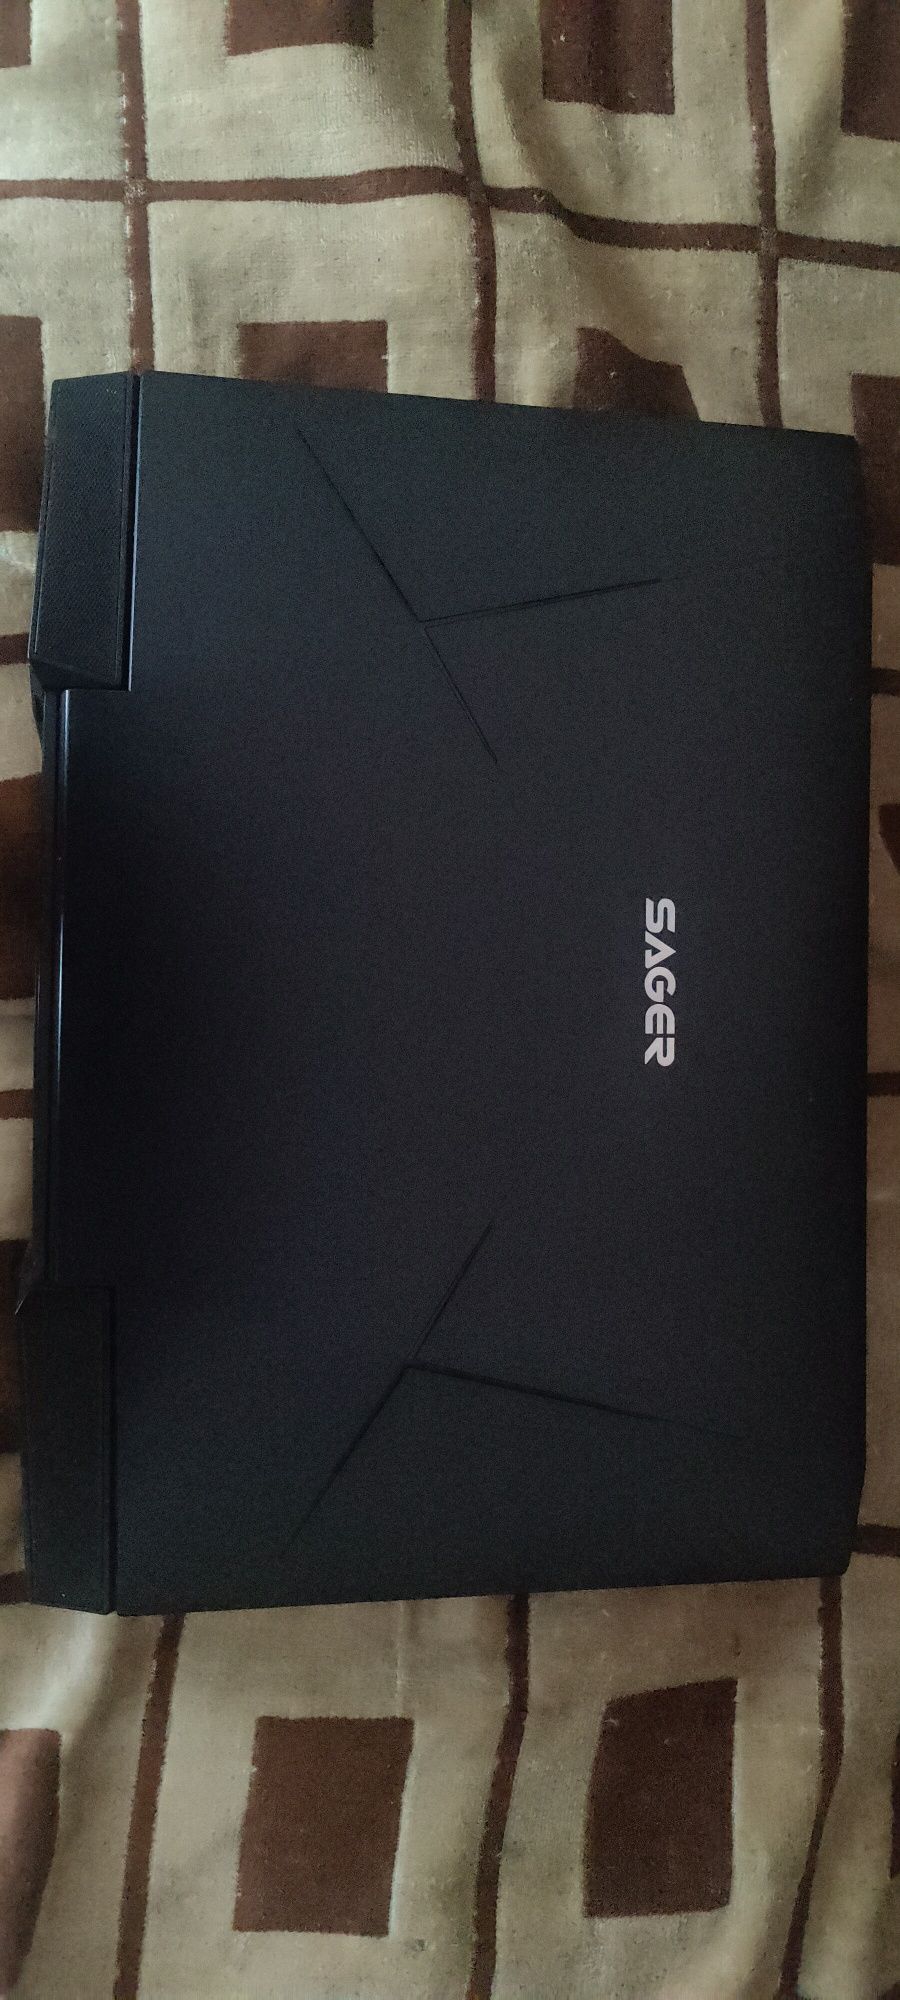 Sager clevo p870dm ноутбук под обновления апгрейд